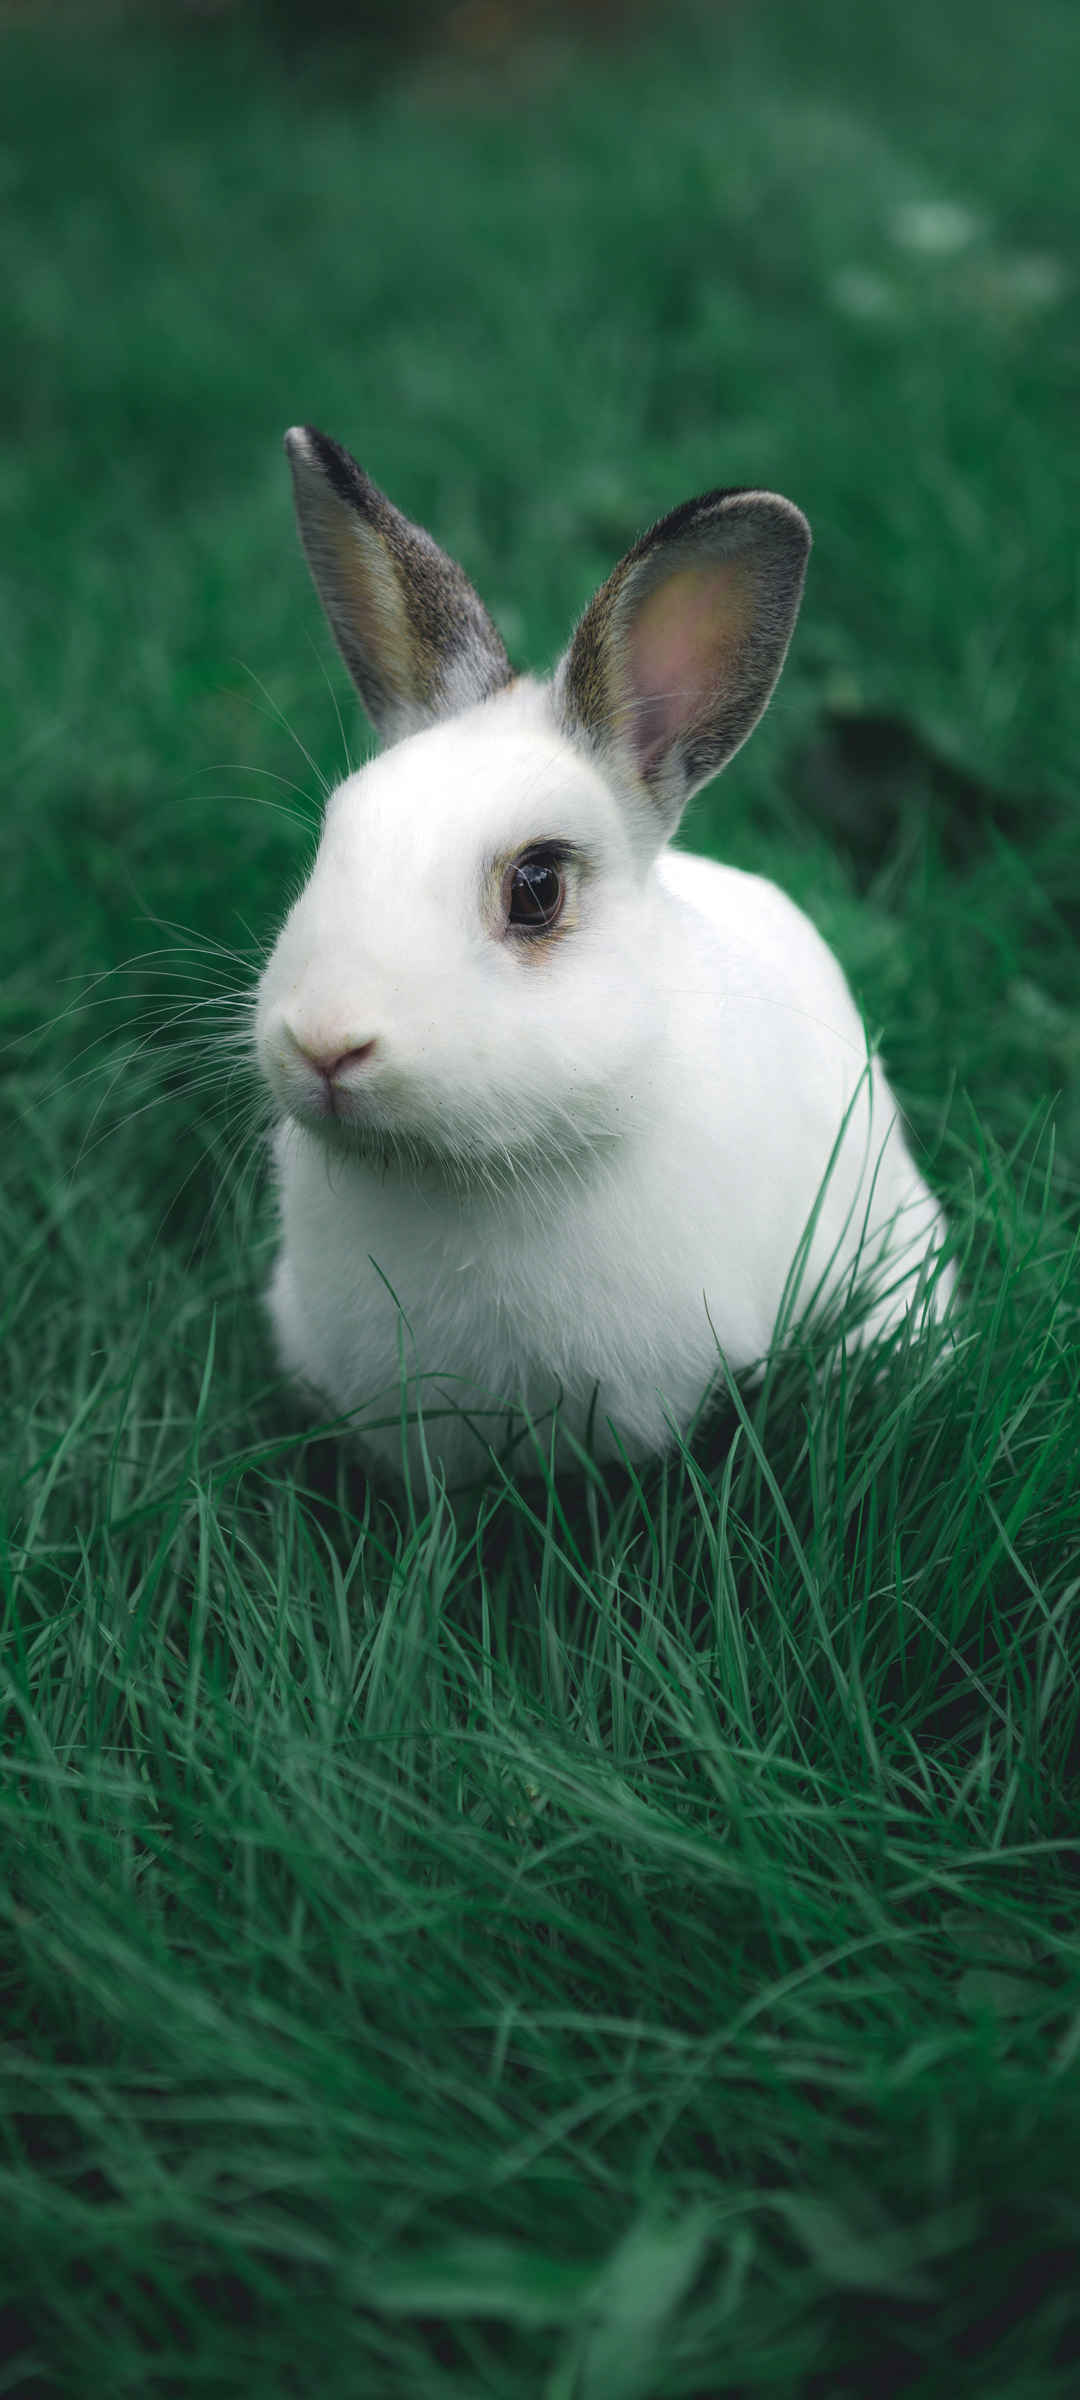 可爱小白兔子动物